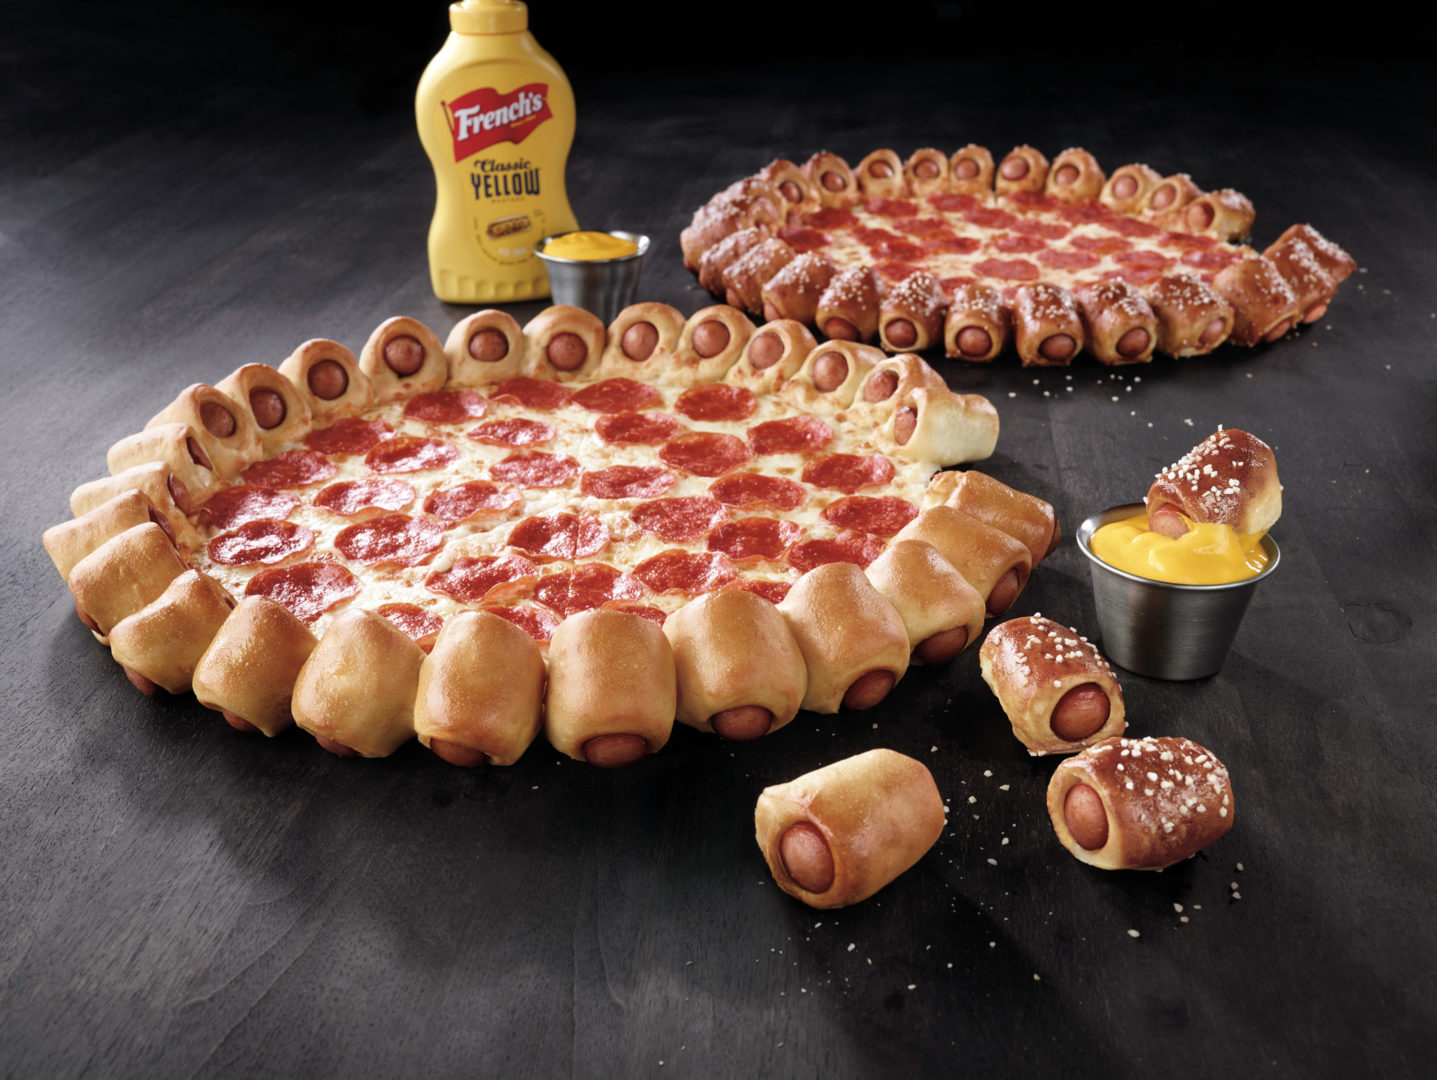 Pizza et Hot Dog, le deux en un par Pizza Hut !